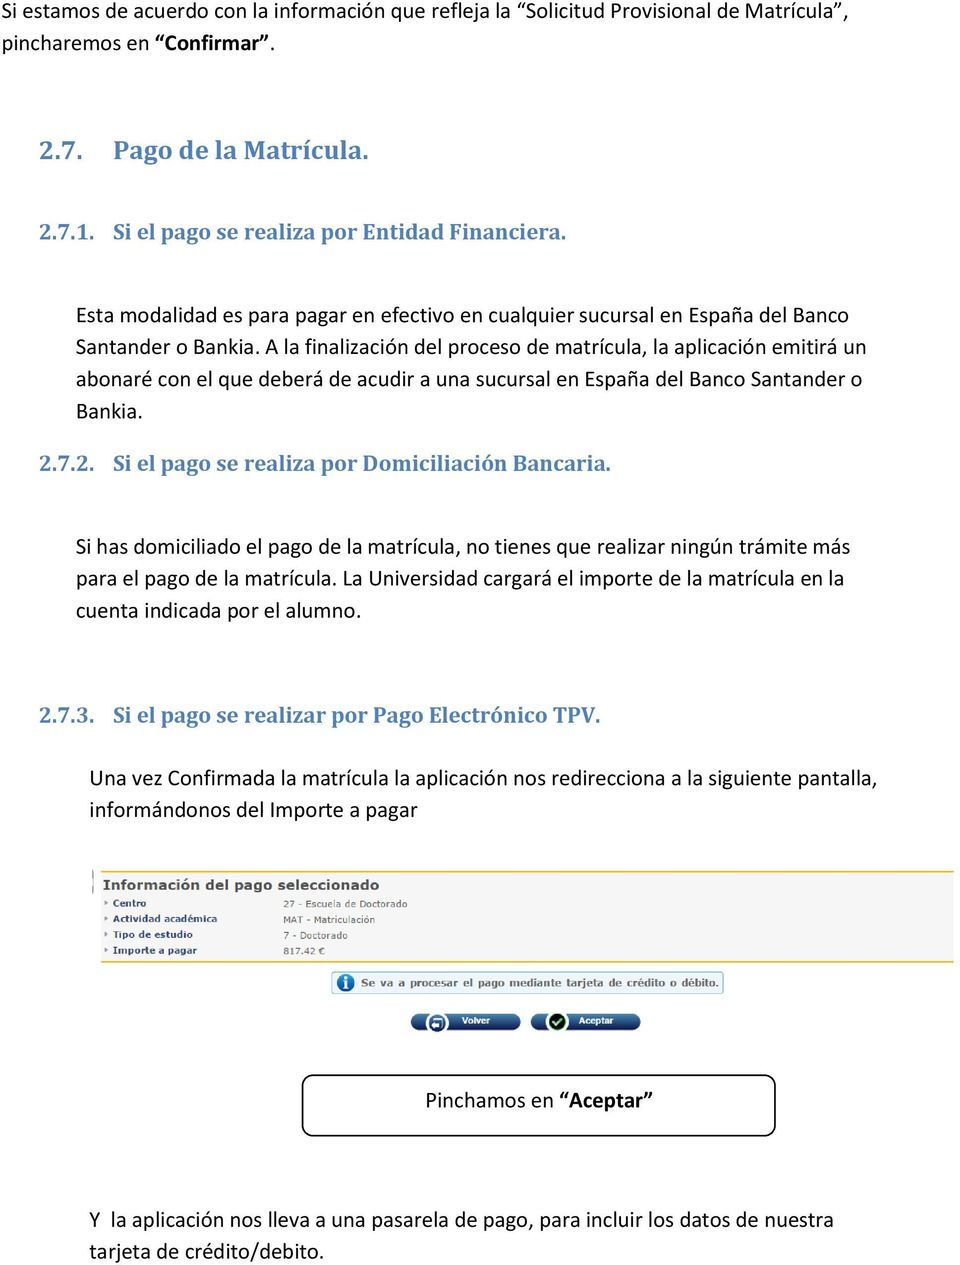 A la finalización del proceso de matrícula, la aplicación emitirá un abonaré con el que deberá de acudir a una sucursal en España del Banco Santander o Bankia. 2.